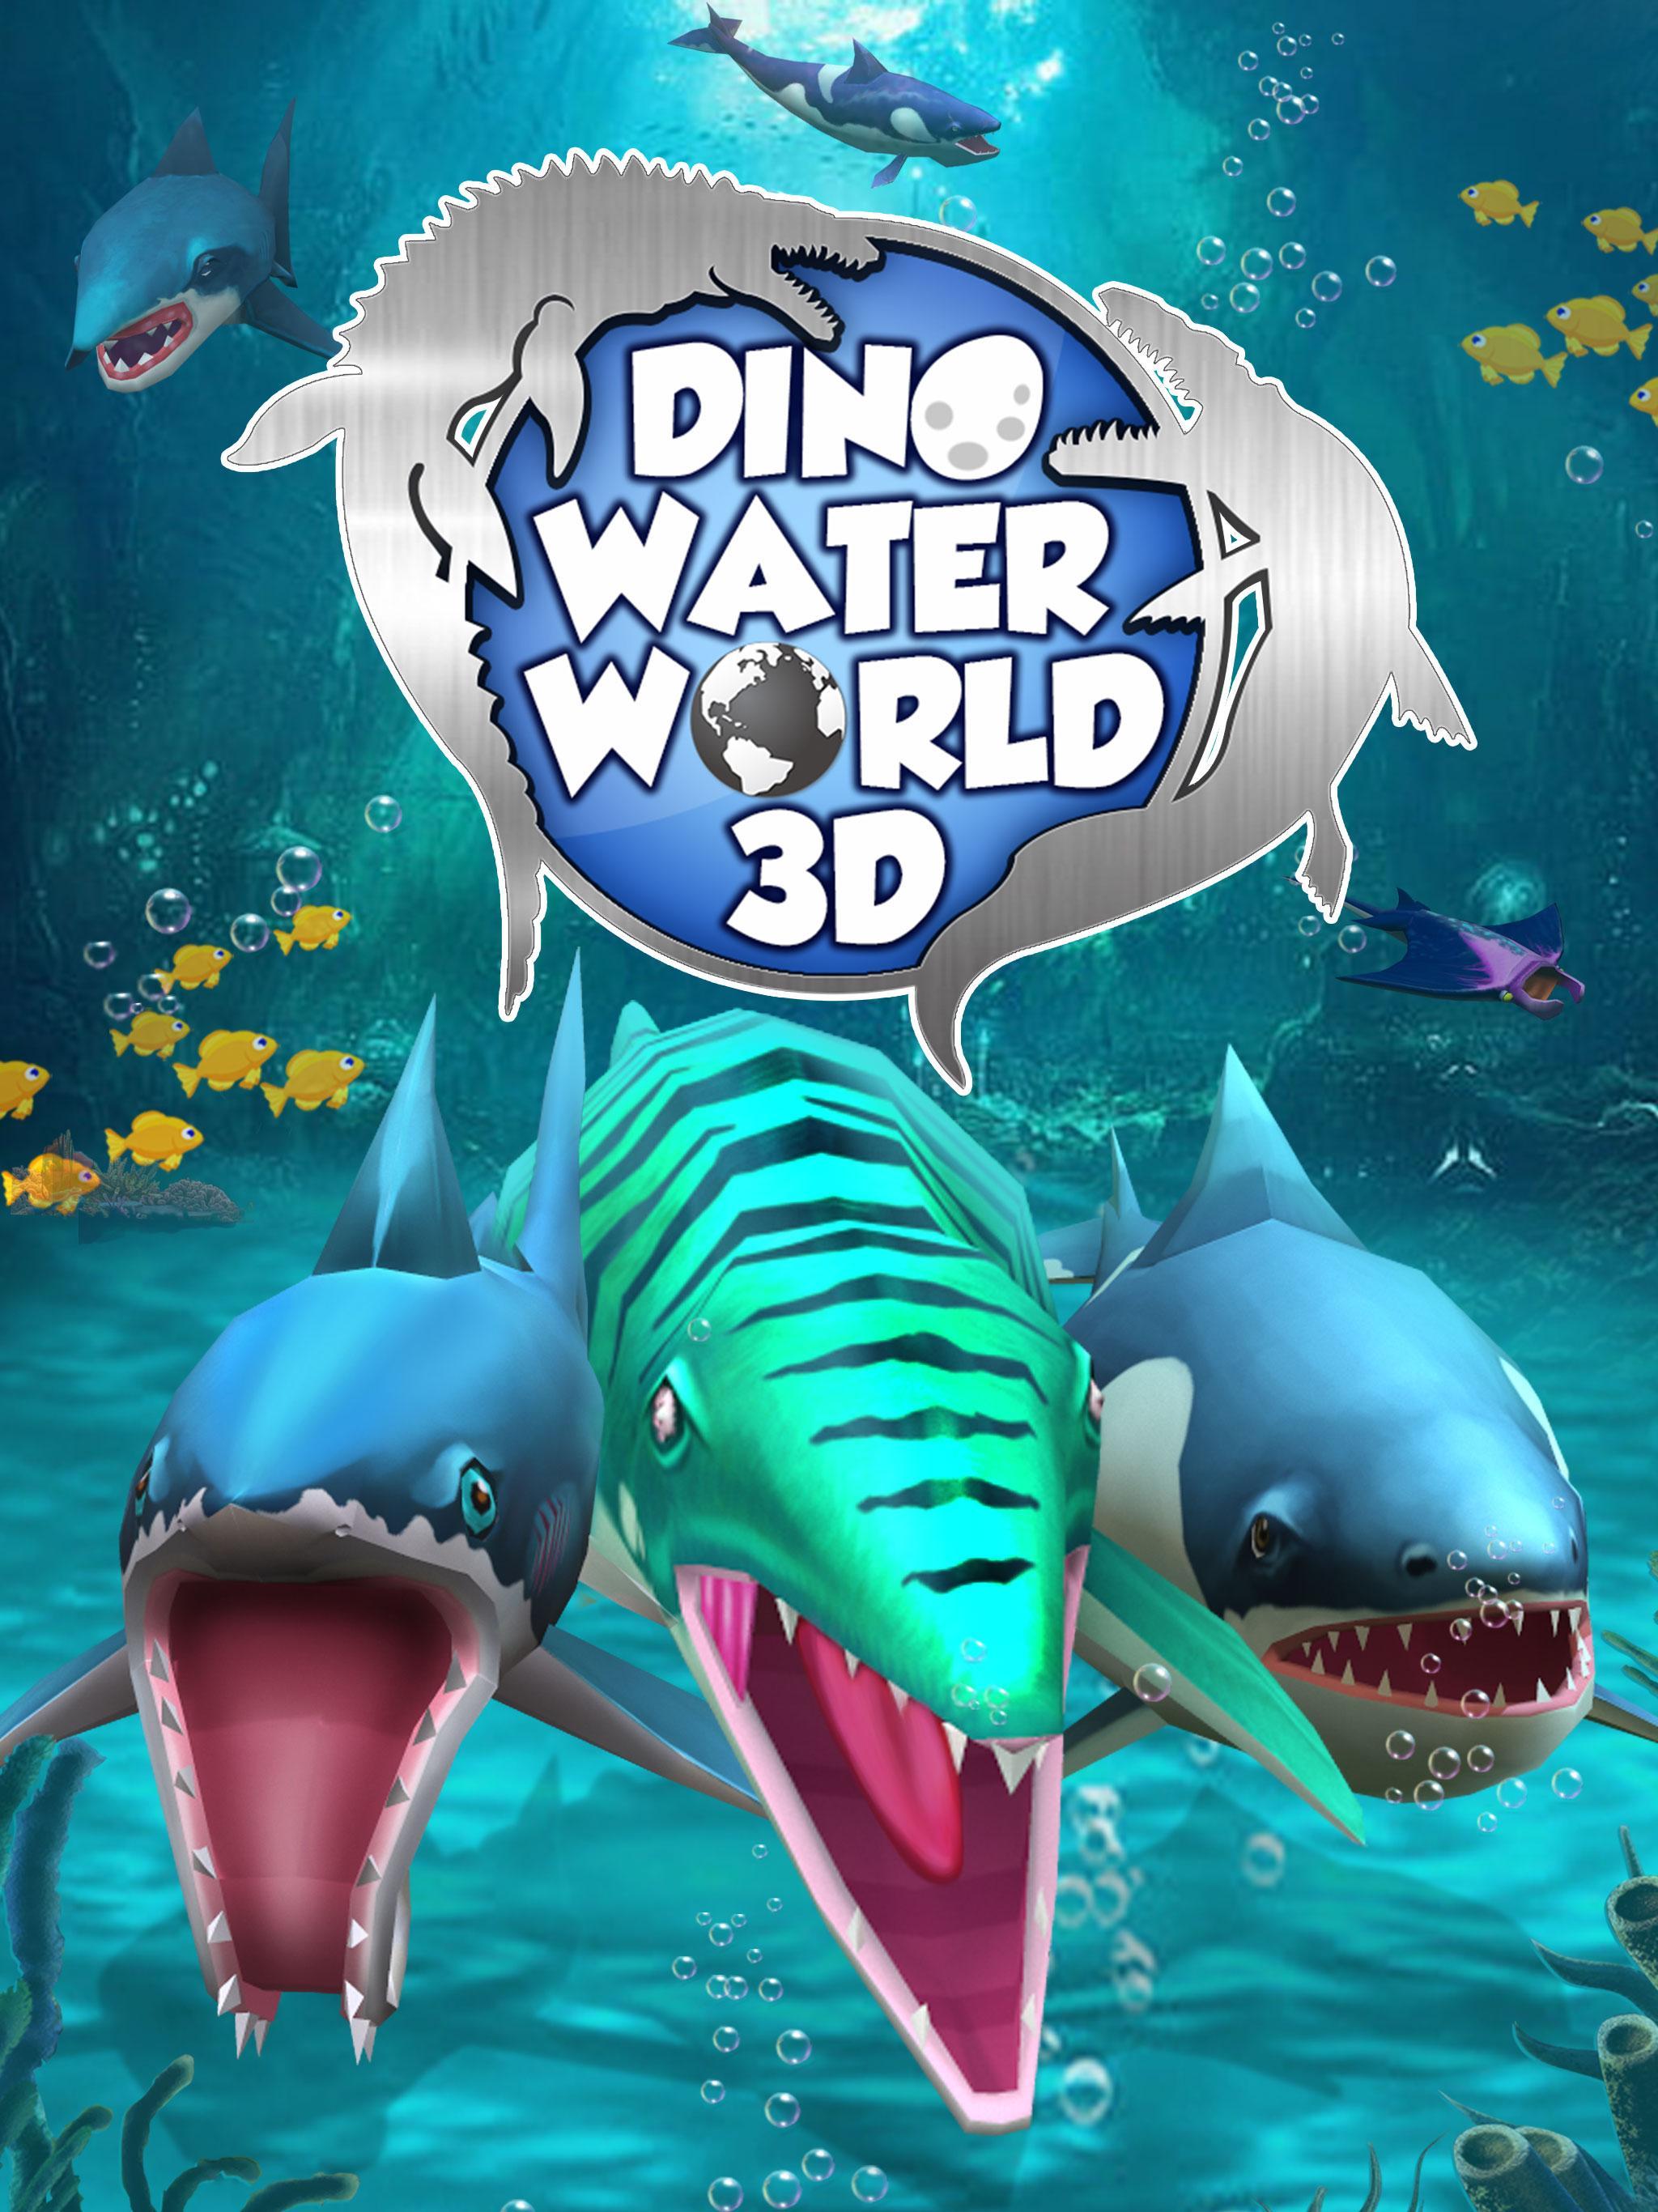 Игра ватер ворлд. Мозазавр из игры Dino Water World 3d. Подводный мир динозавров. Динозавры морских глубин игра. Ватер ворлд игра.